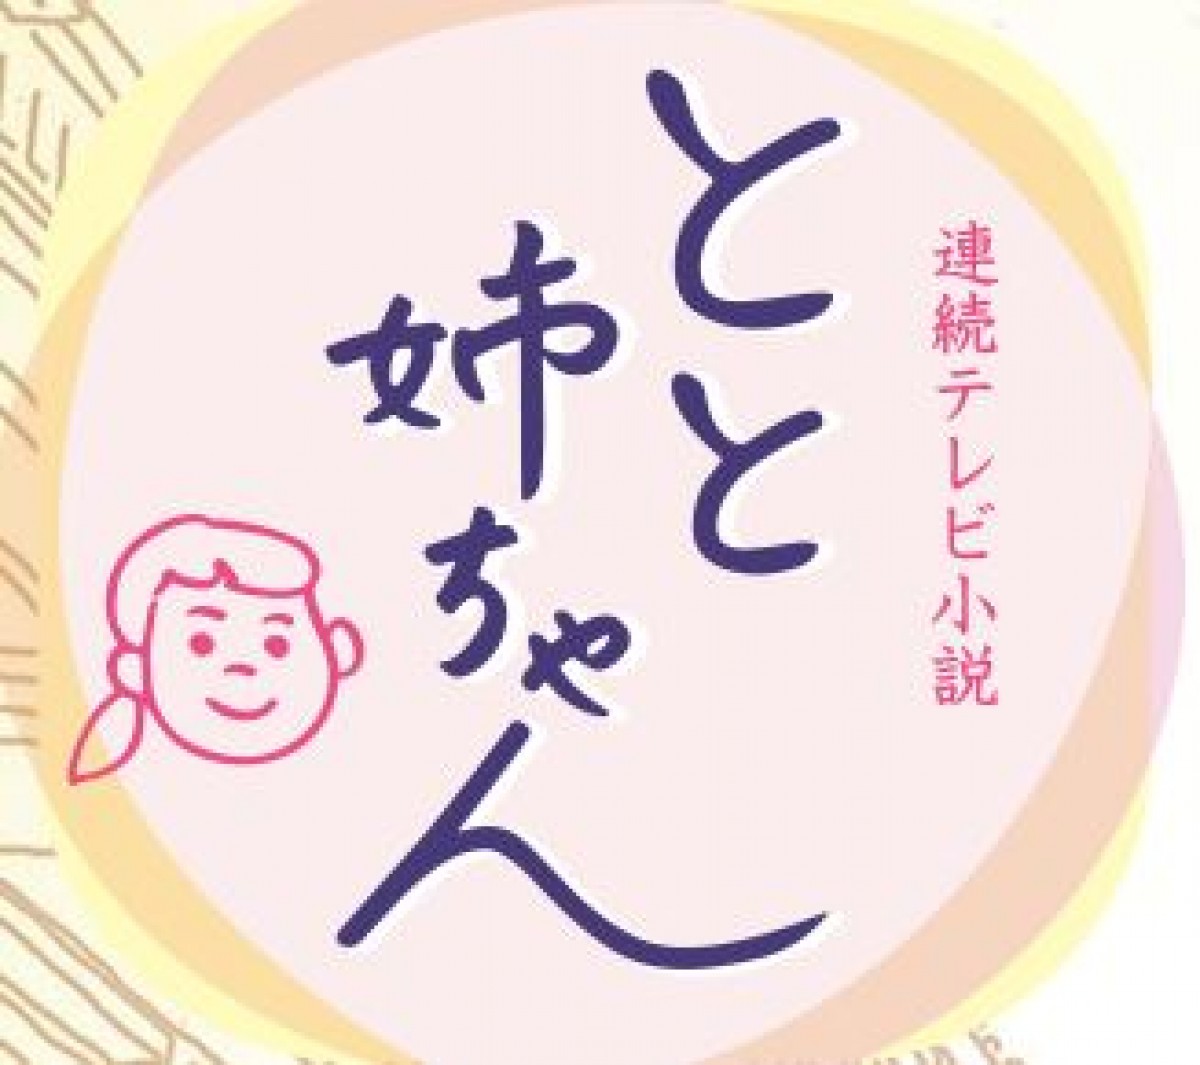 『コナン』声優・緒方賢一、朝ドラ出演でツイッタートレンド入り